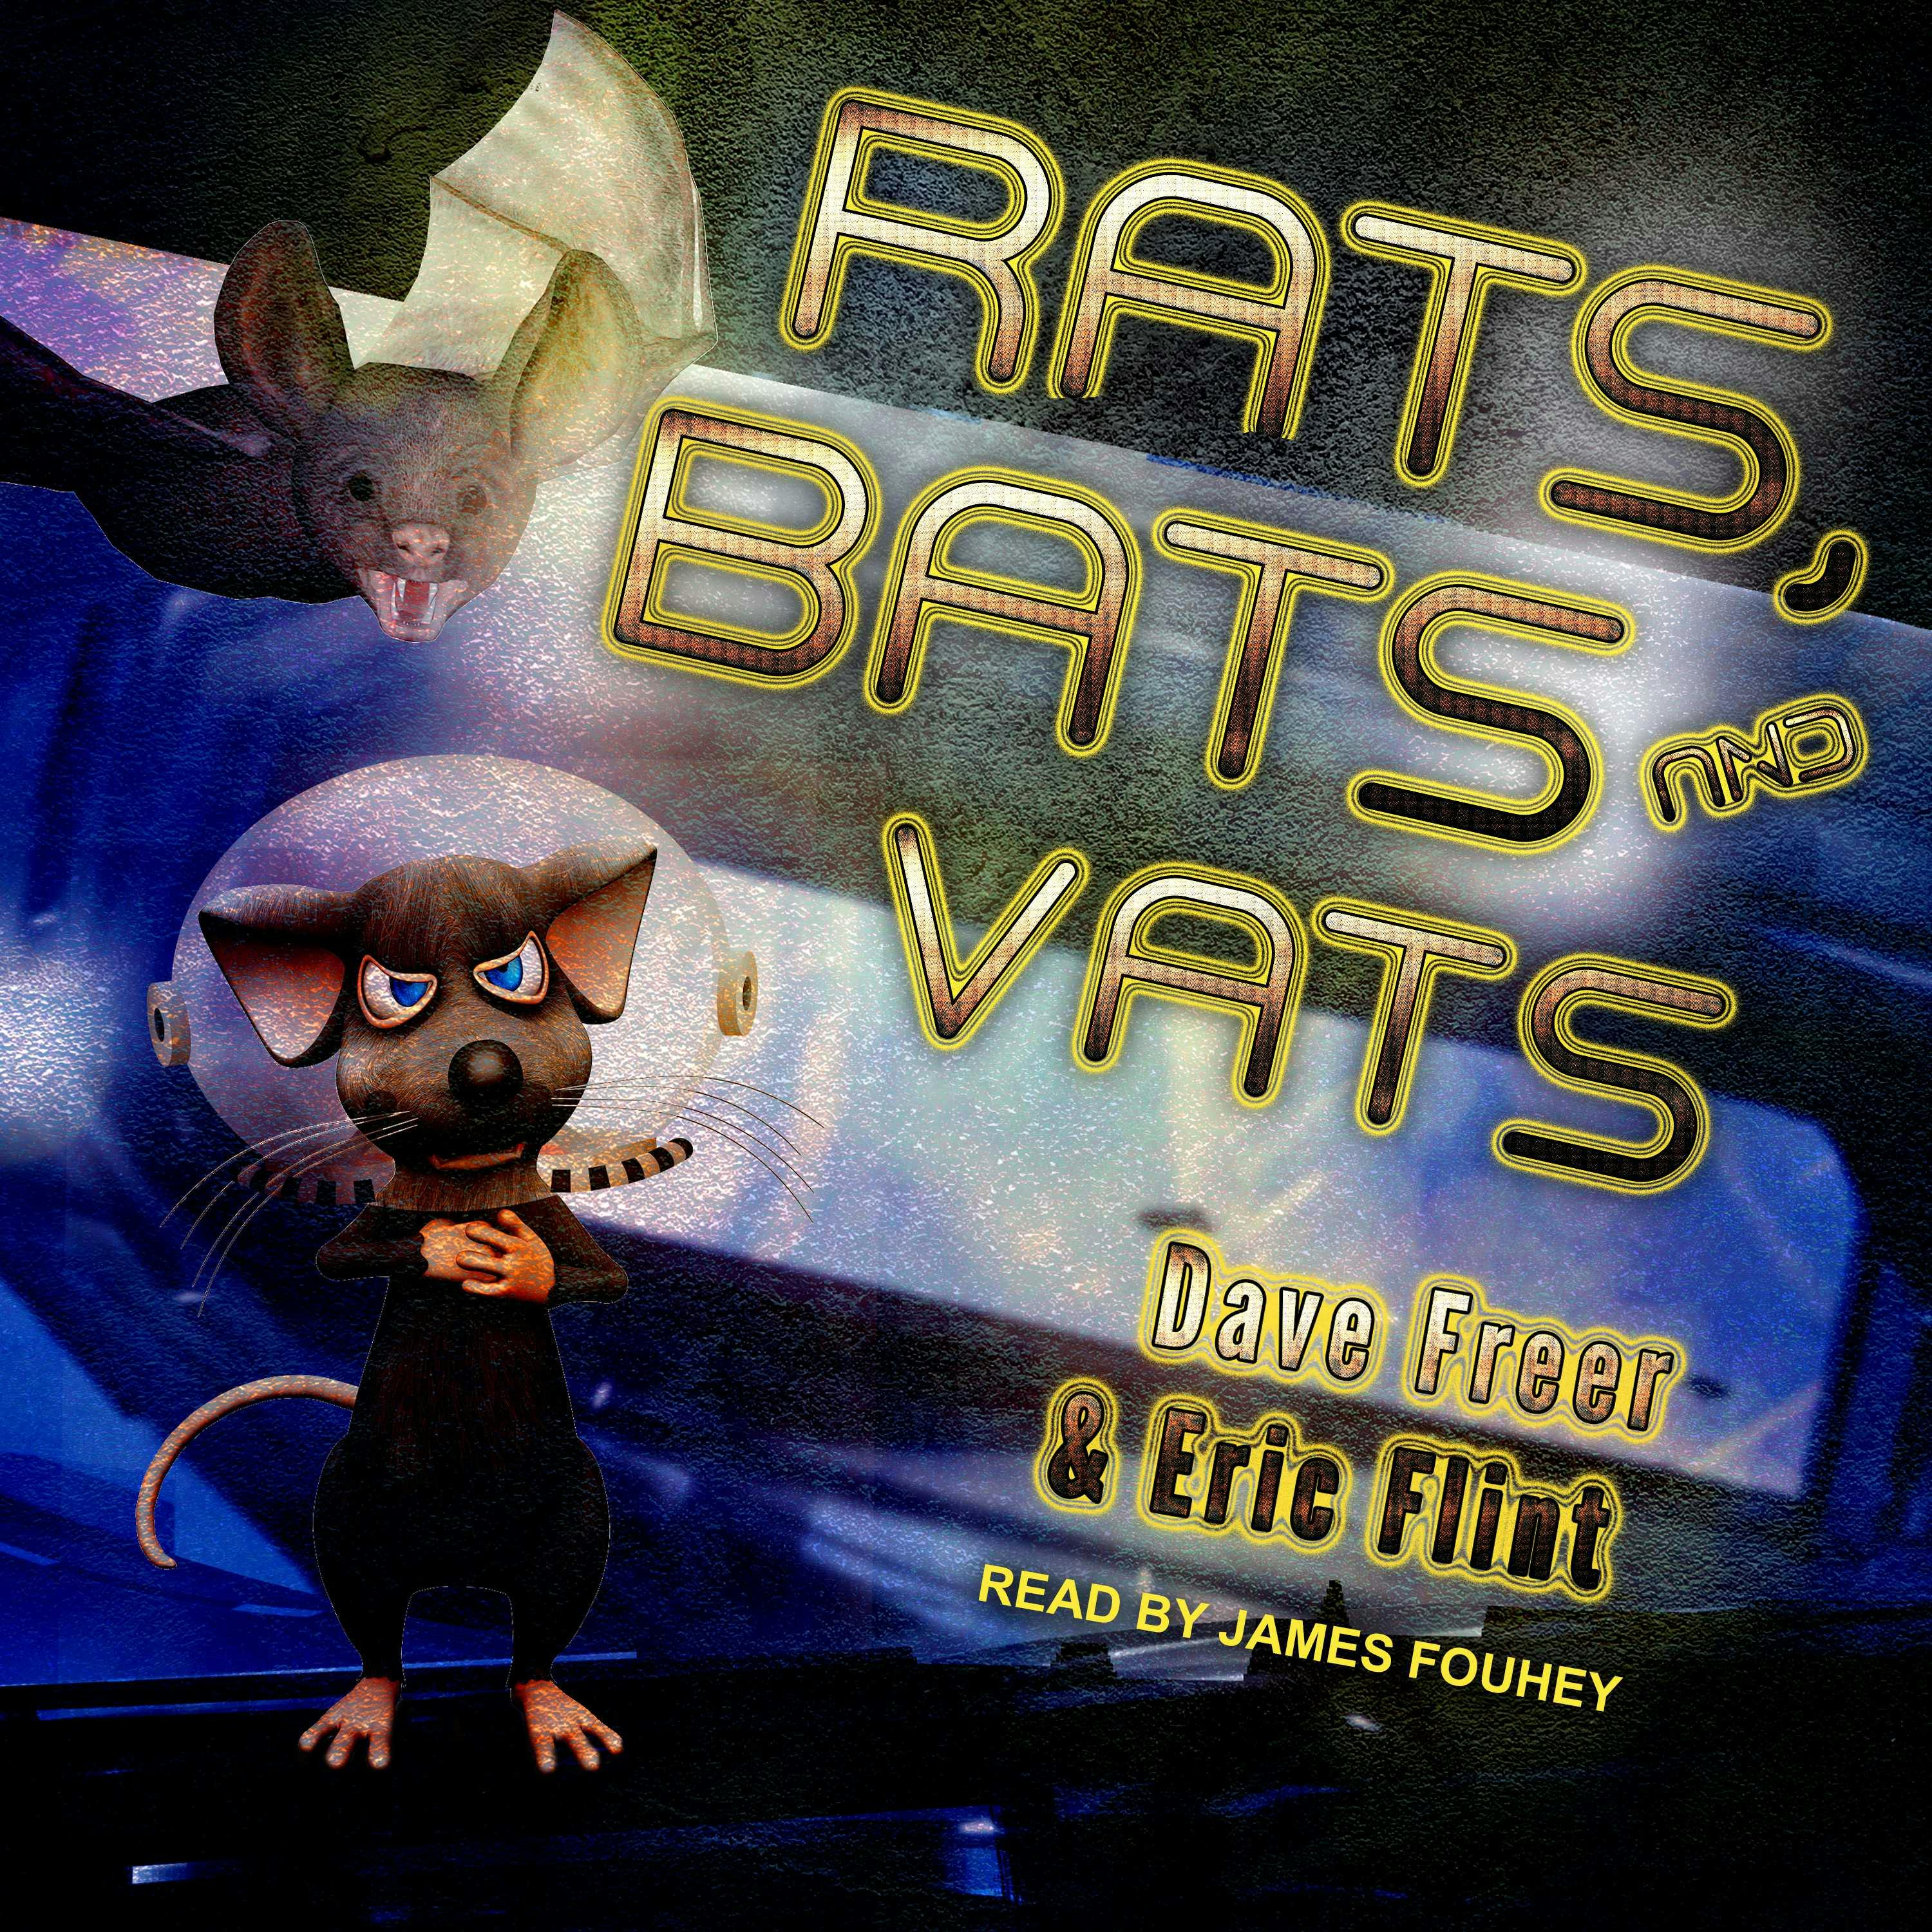 Rats, Bats and Vats - undefined